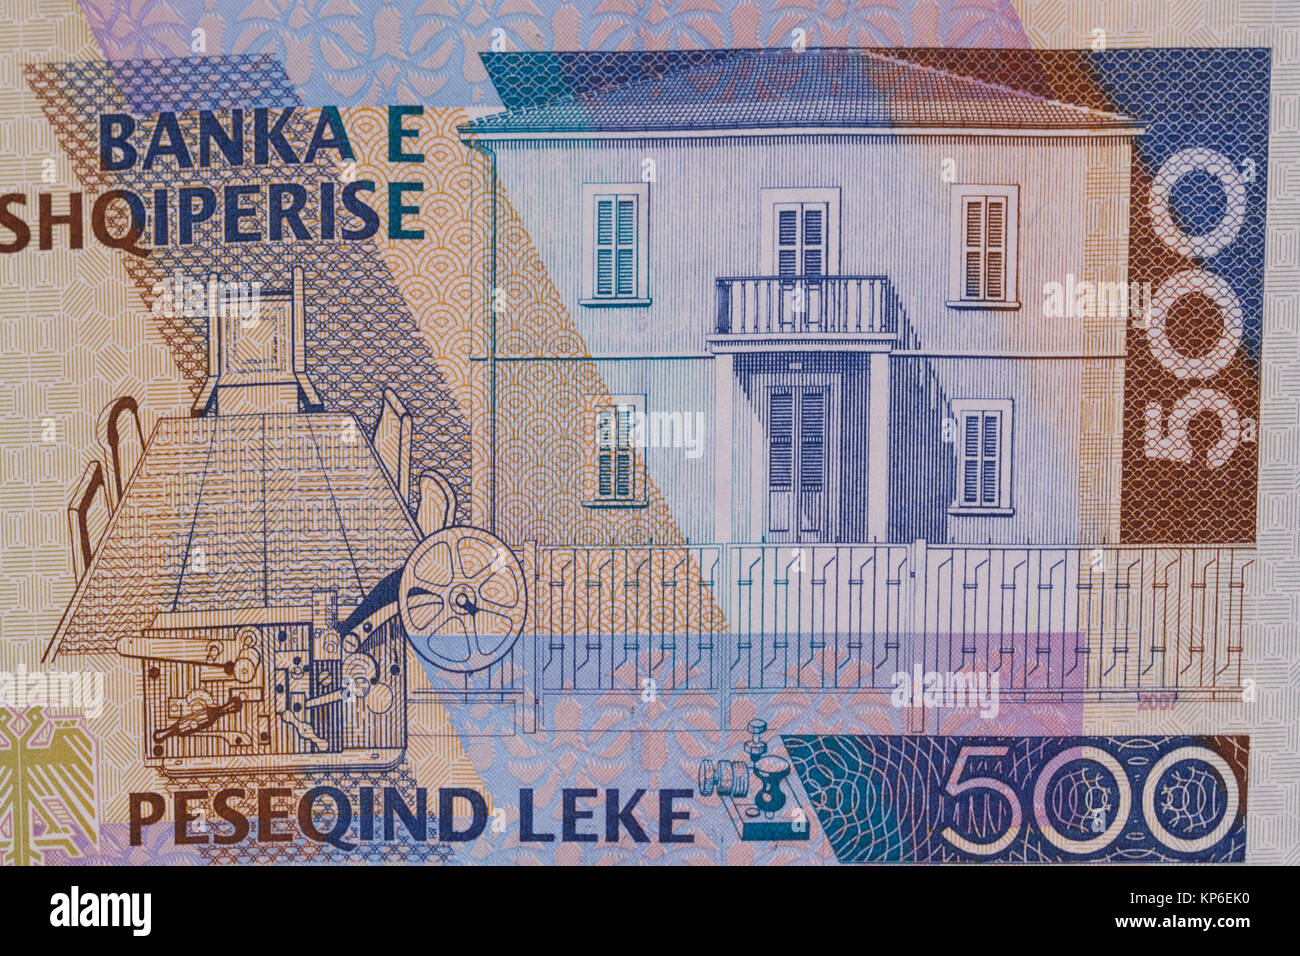 Rückseite der albanische Währung Lek Banknote von 500 Bezeichnung, die traditionelle albanische Haus - vlora Unabhängigkeit Gebäude Stockfoto